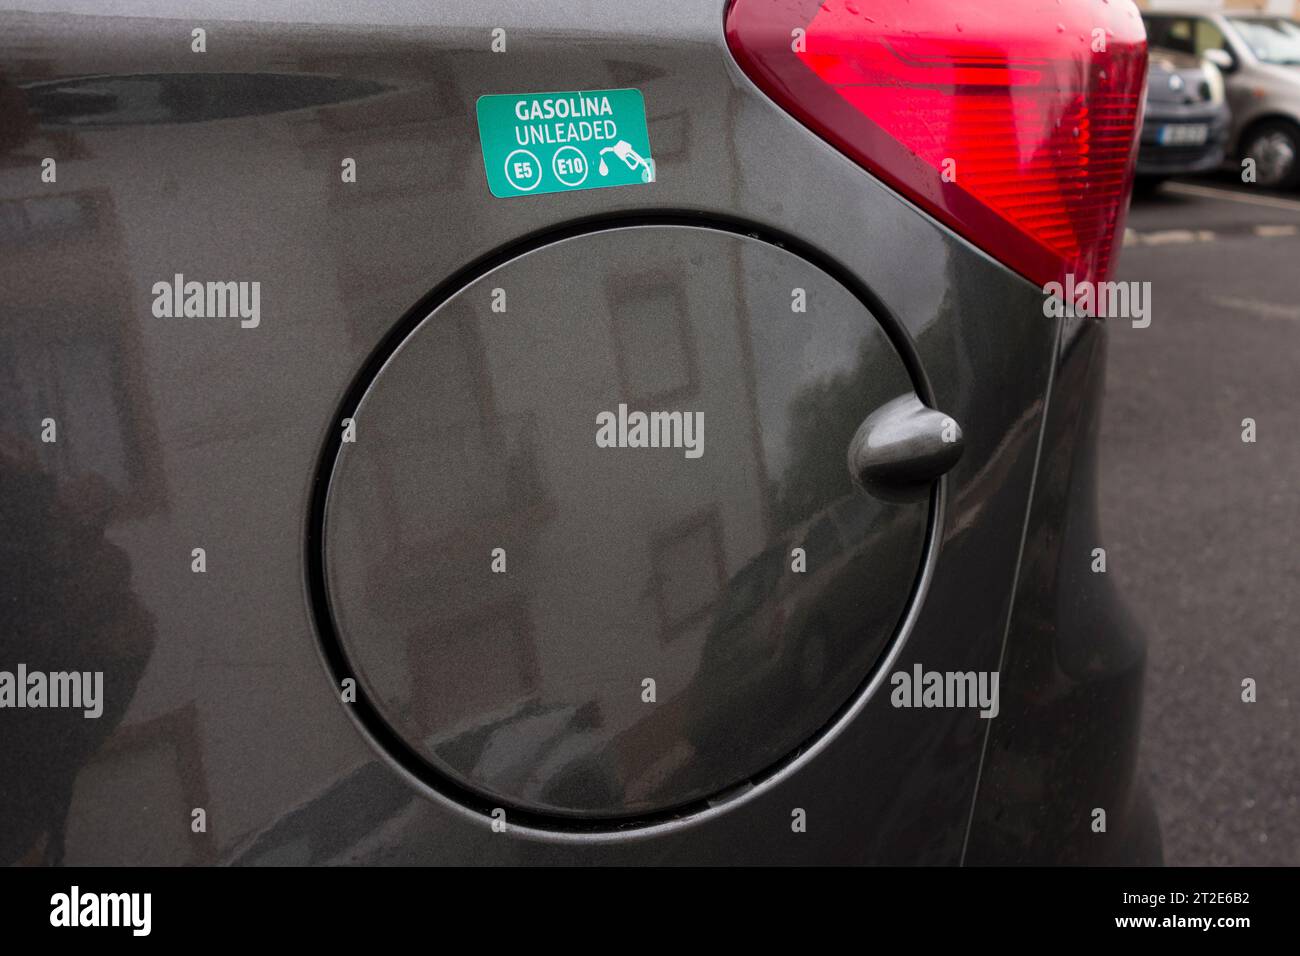 Adesivo sopra il coperchio del tappo del carburante che mostra il tipo di carburante richiesto per l'auto a noleggio, Portogallo Foto Stock